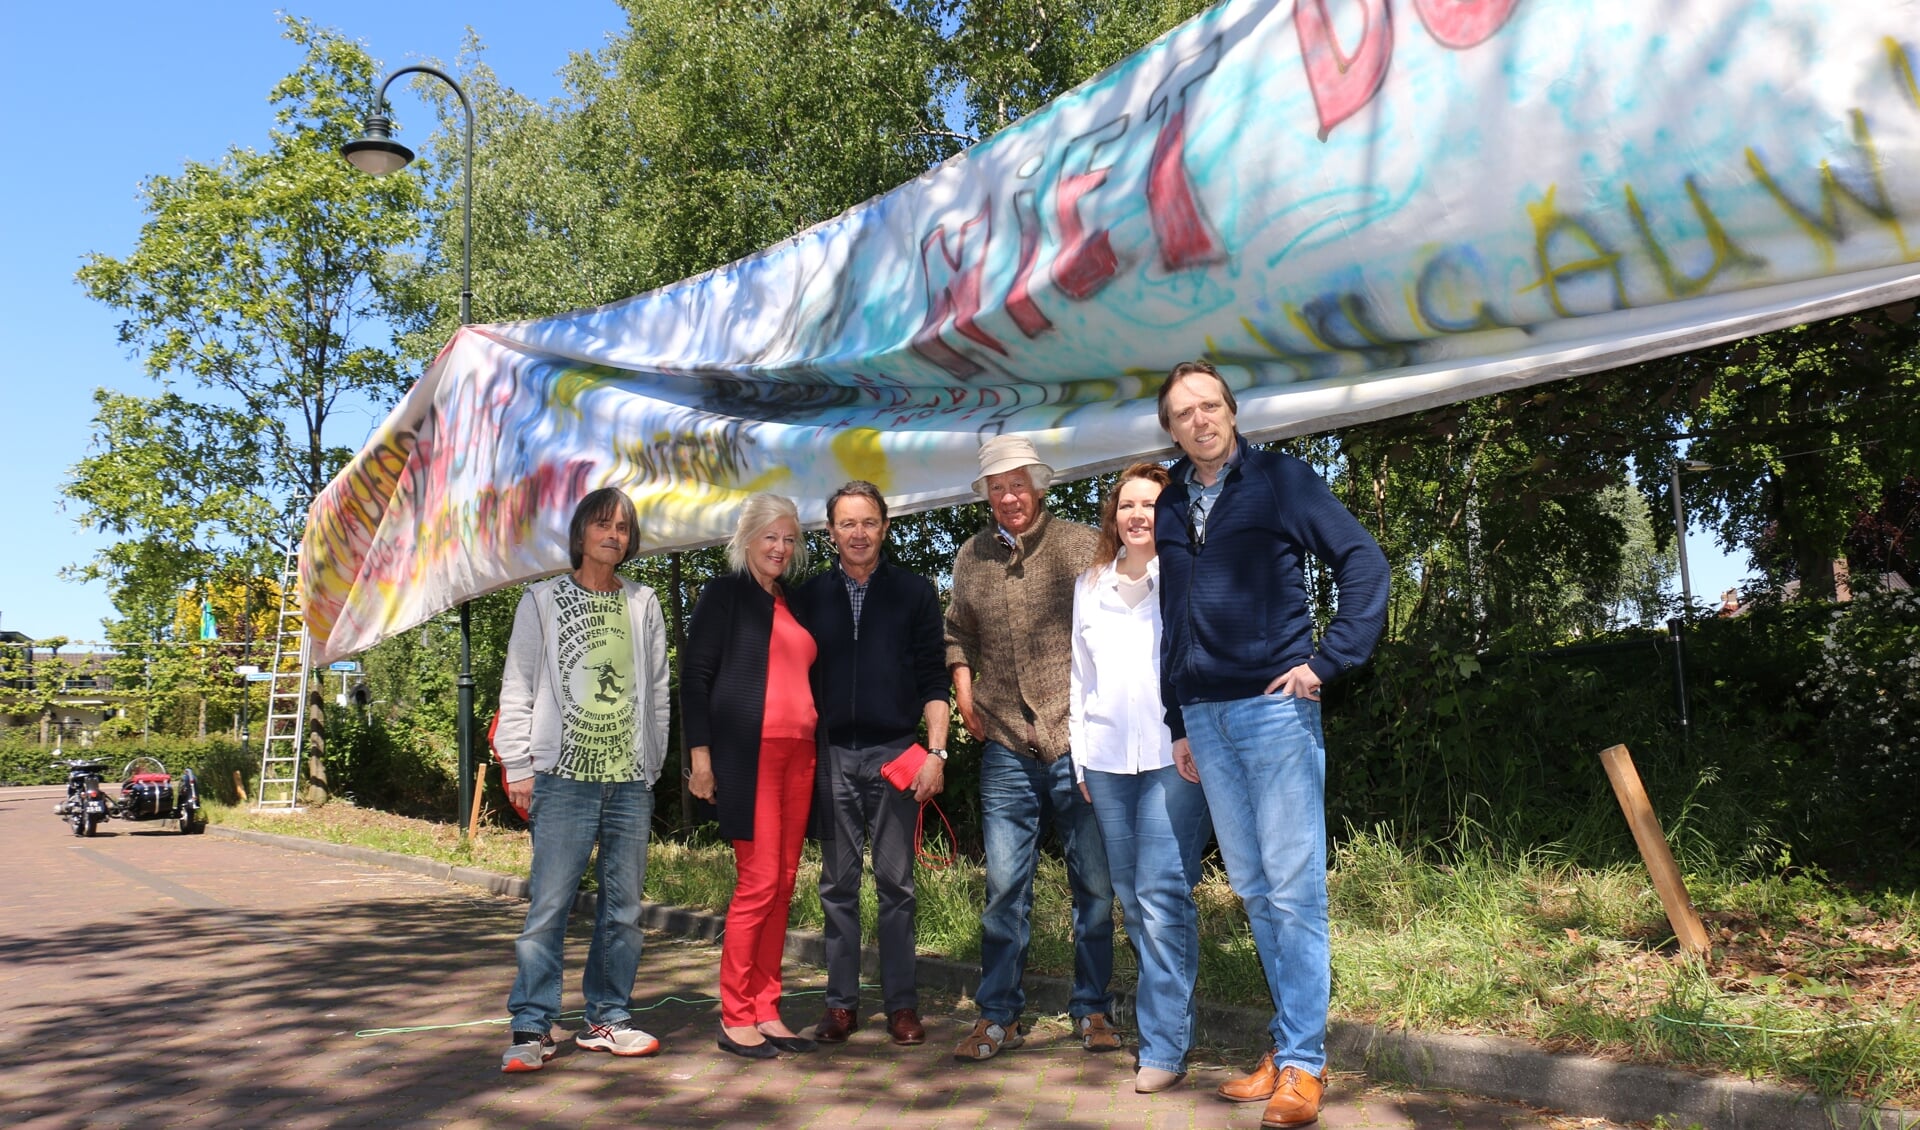 De werkgroep, met onder anderen Huub van Gool, Joop Moret, Rikko Fransen (uiterst links) en Janita Wolfswinkel (tweede van rechts): ,,Definitief schade aan deze plek.”